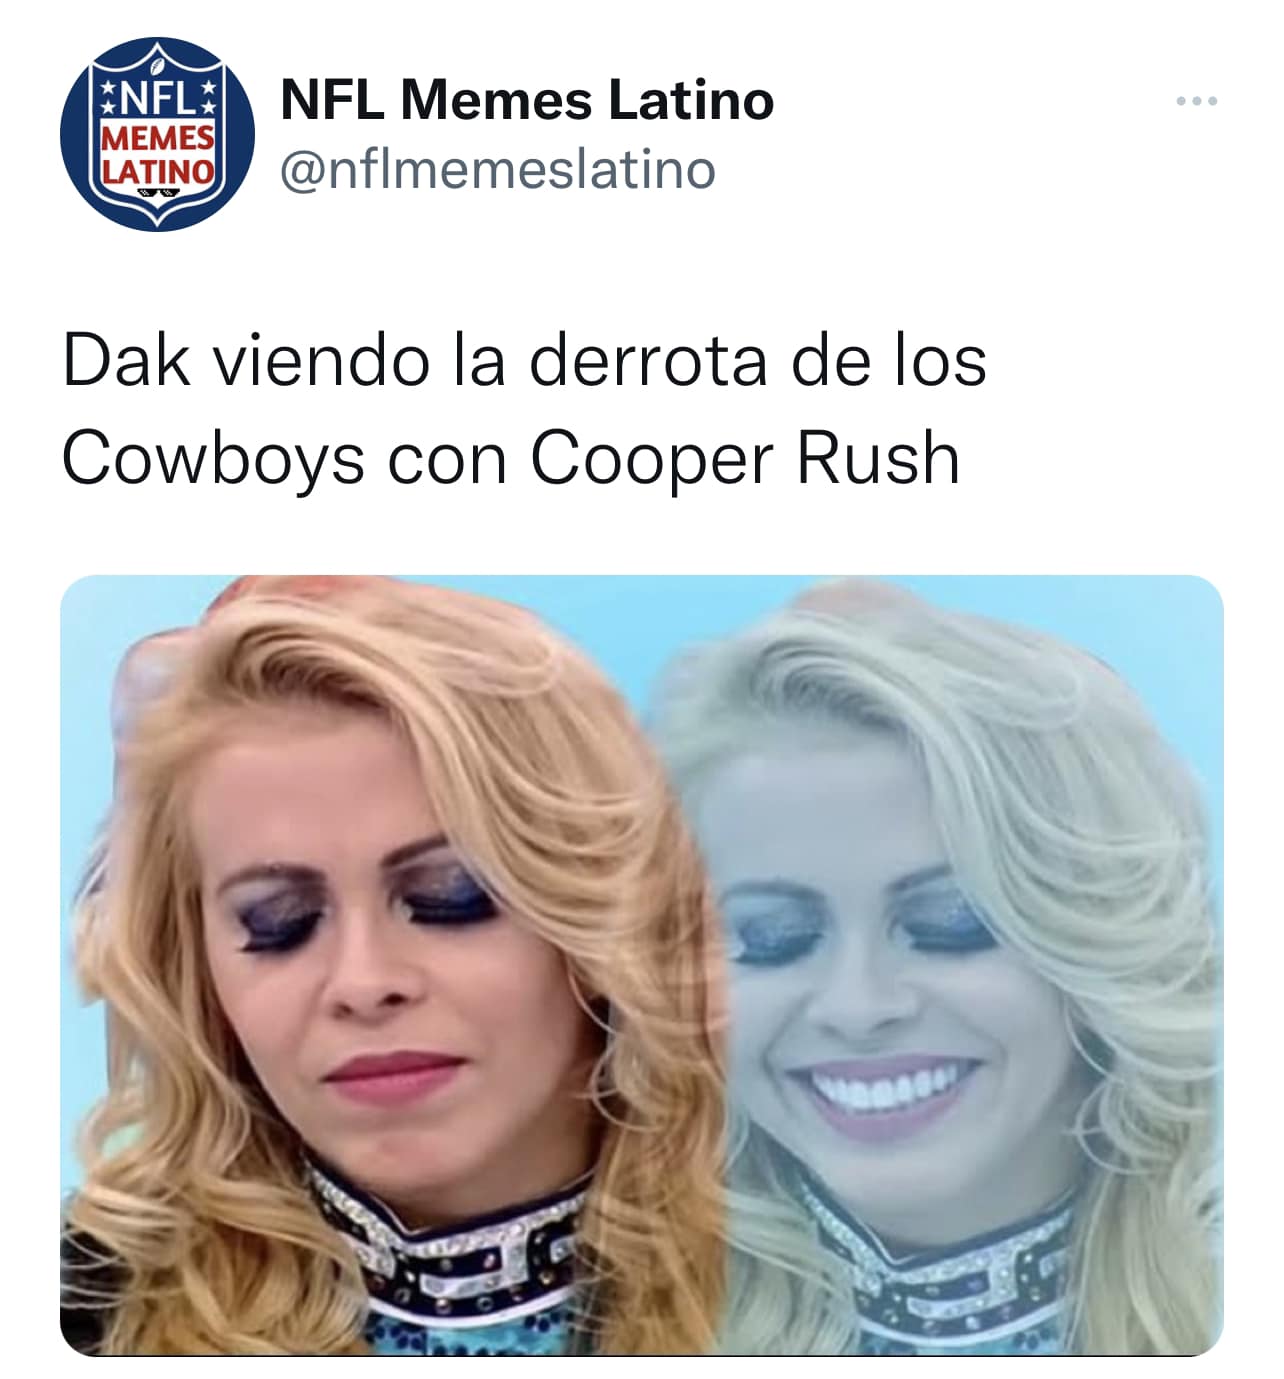 NFL Latino